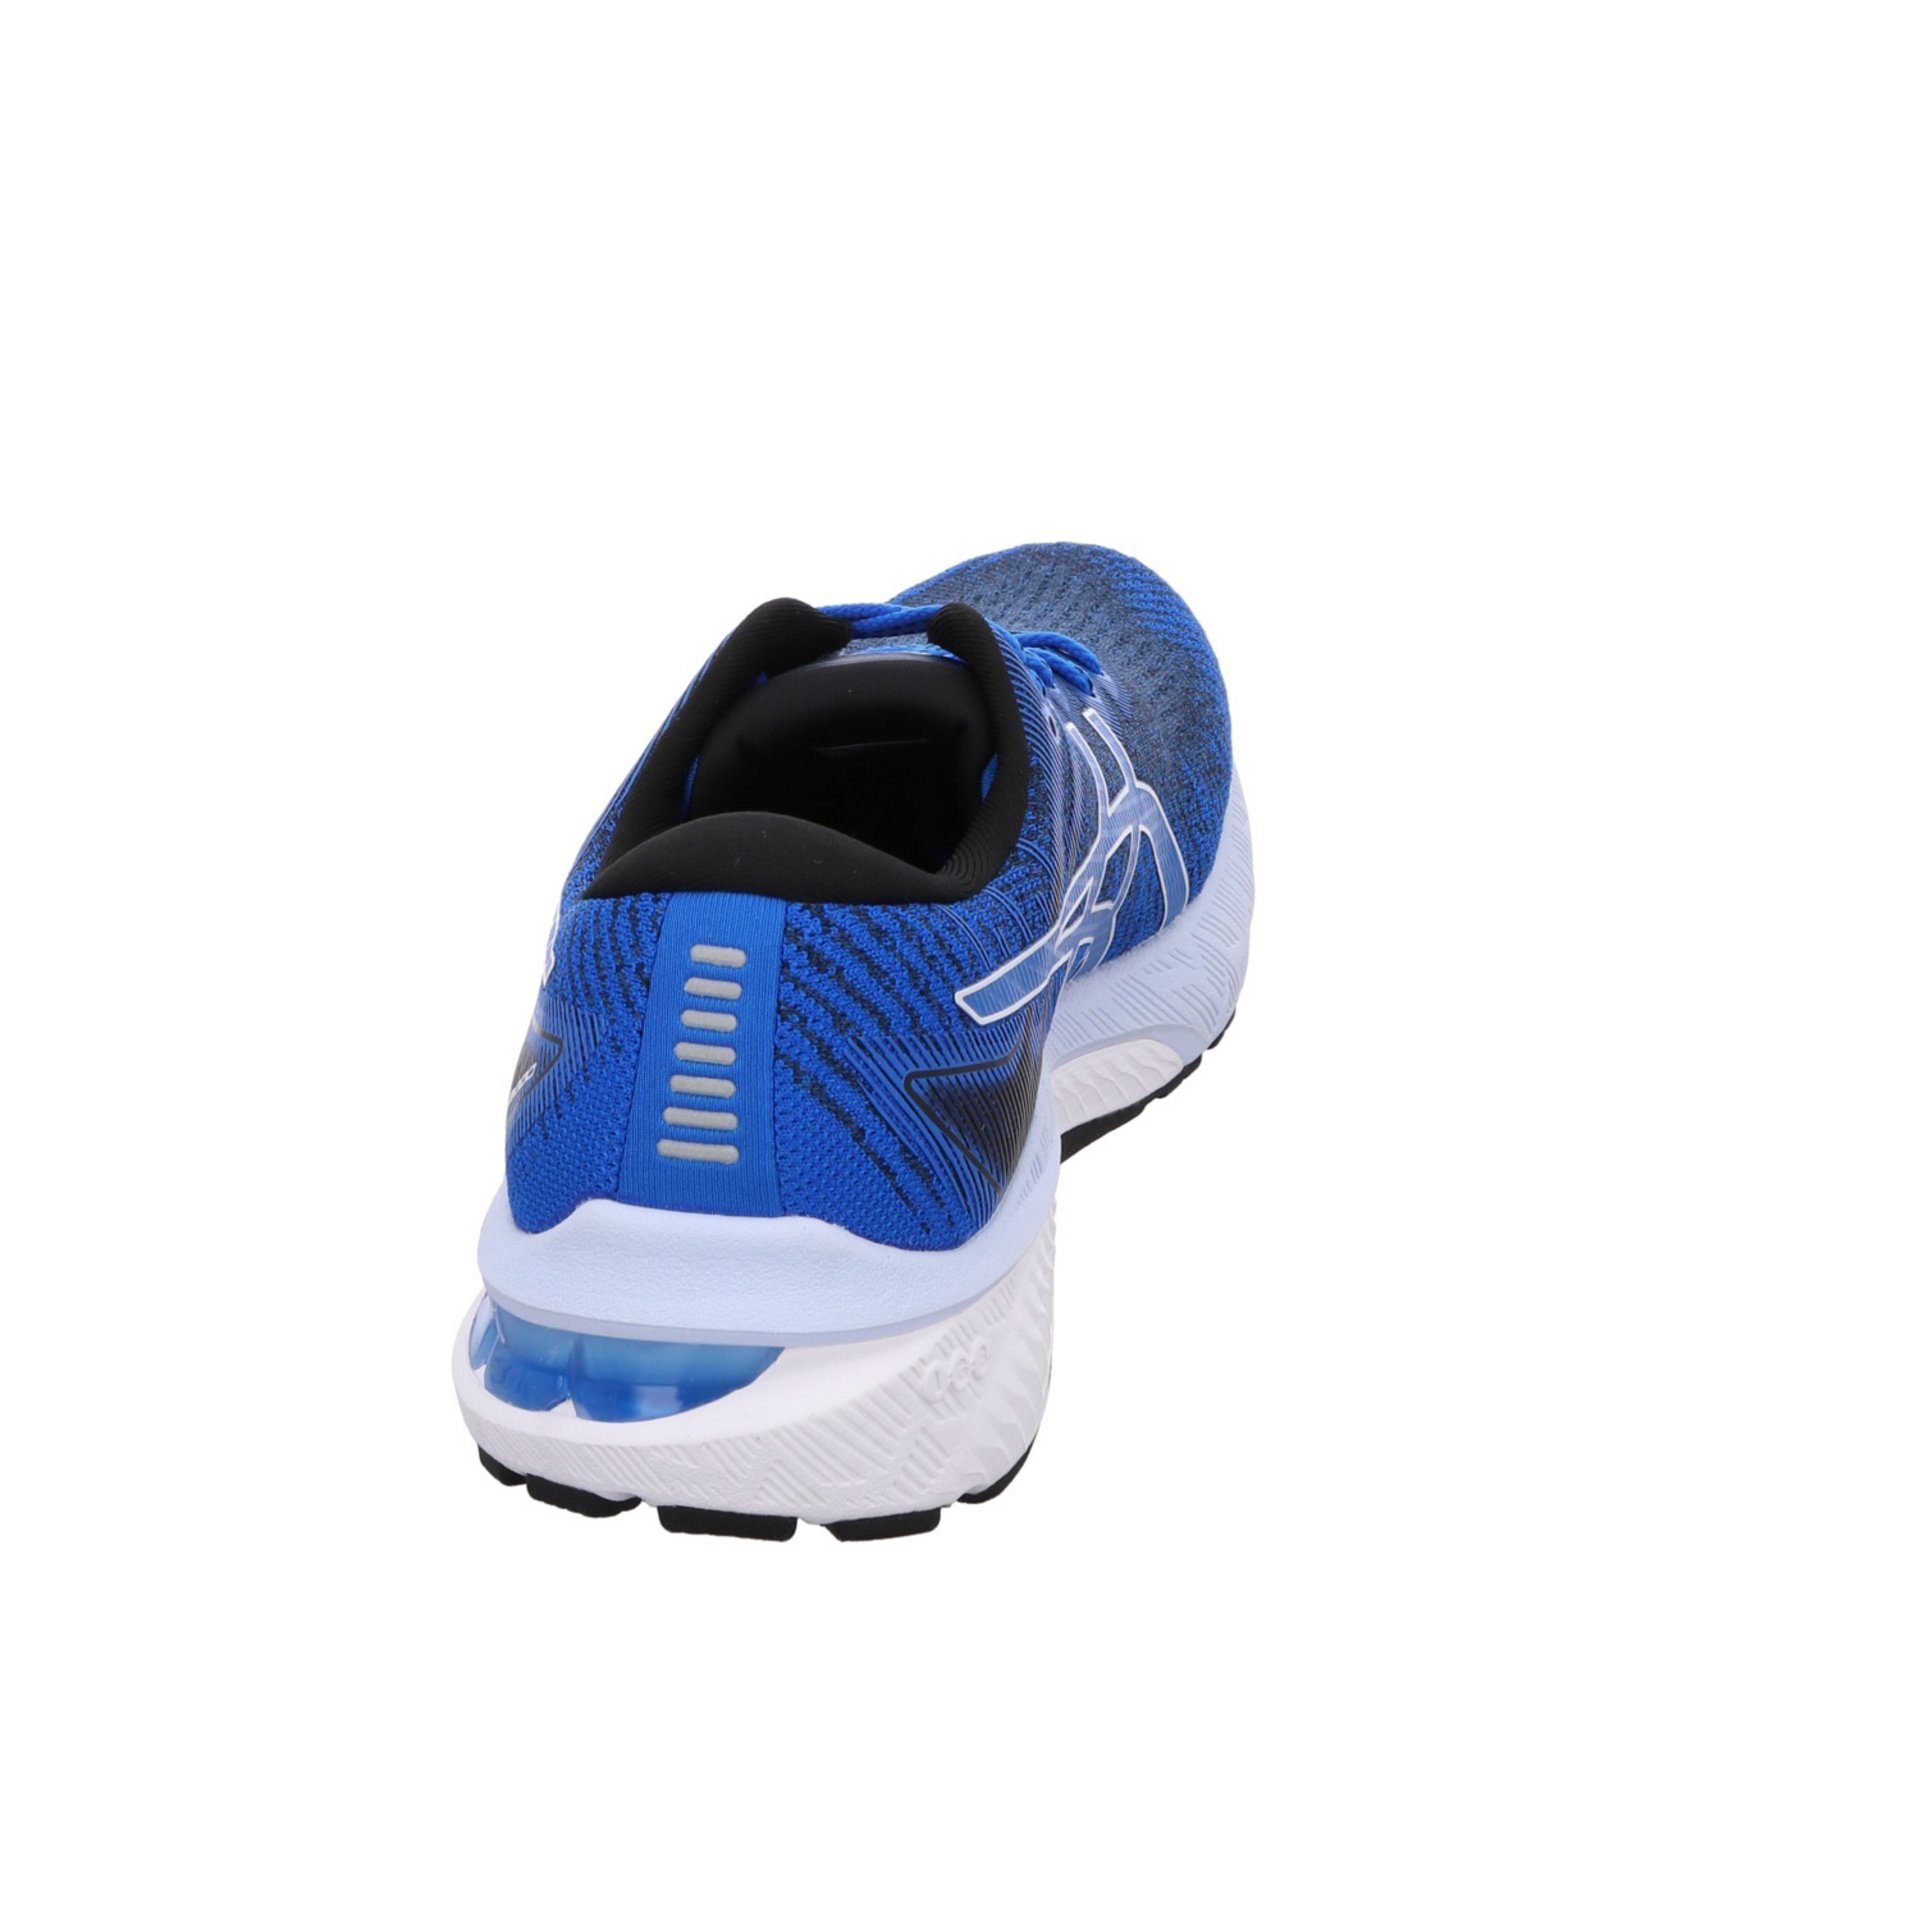 Asics Damen Laufschuhe GT-2000 Textil blau kombi-weiss Laufschuh Laufschuh